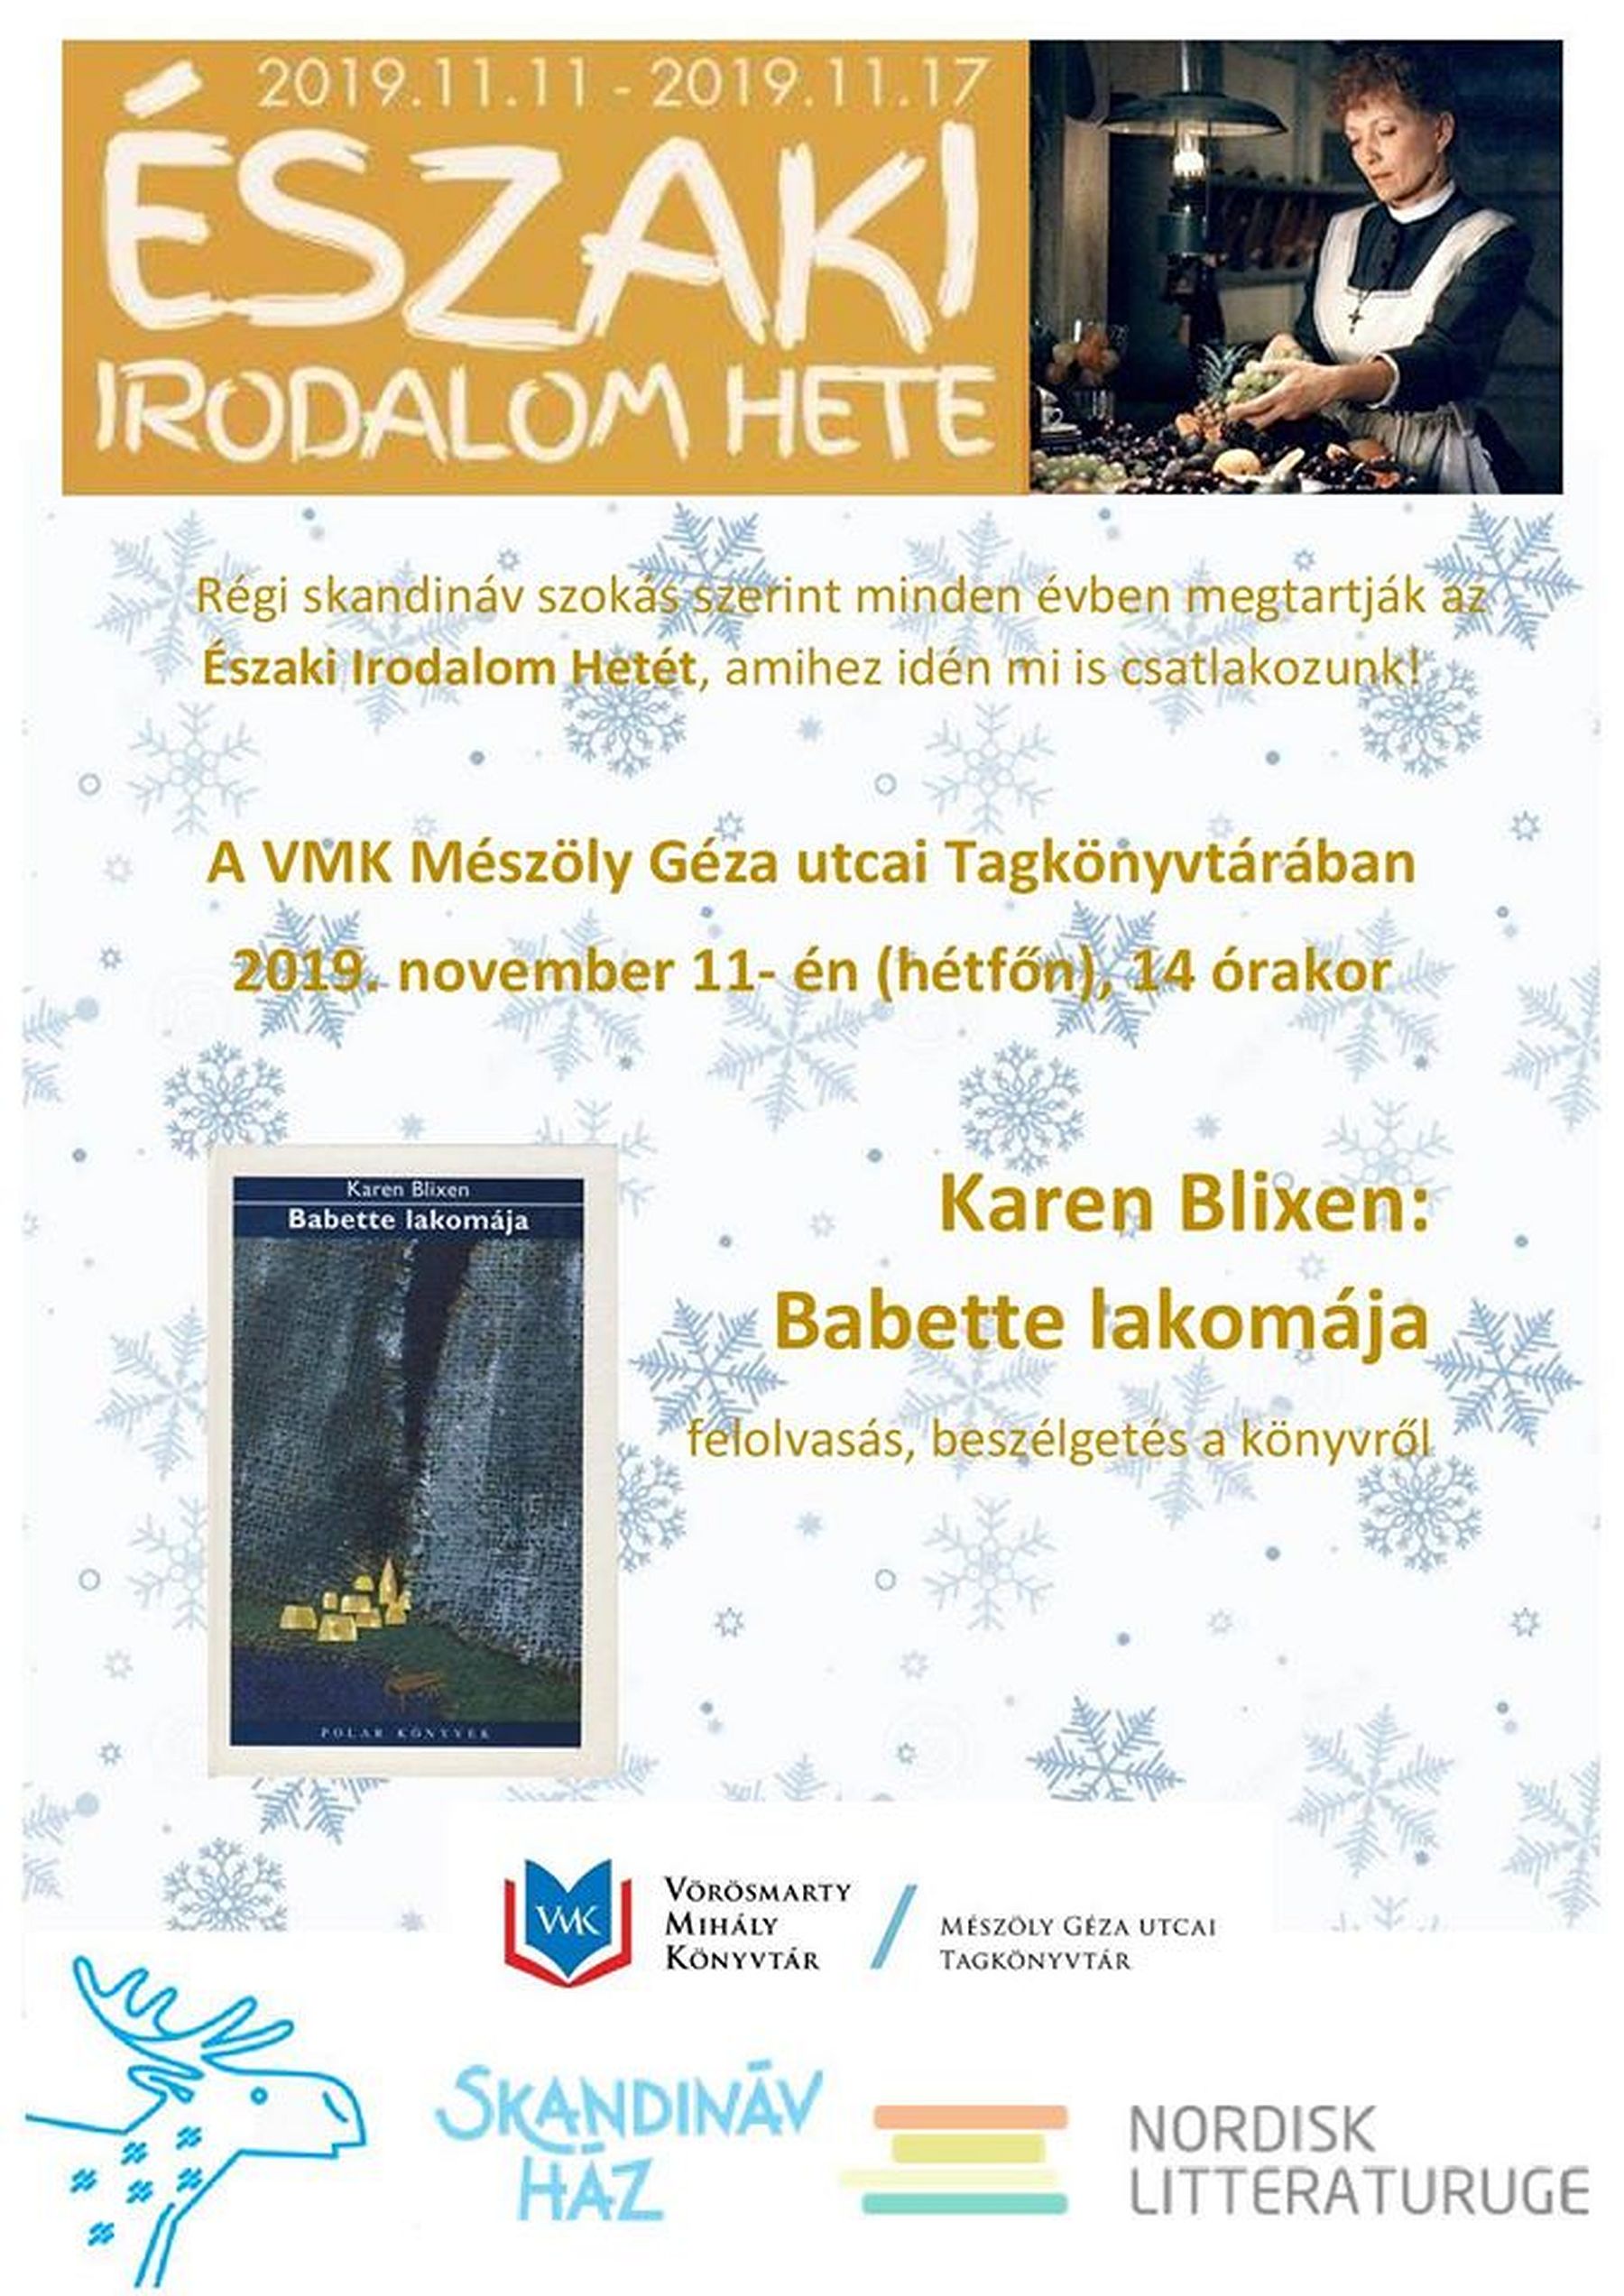 Északi Irodalom Hete - beszélgetés Karen Blixen: Babette lakomája című művéről a Mészöly Géza utcai Tagkönyvtárban